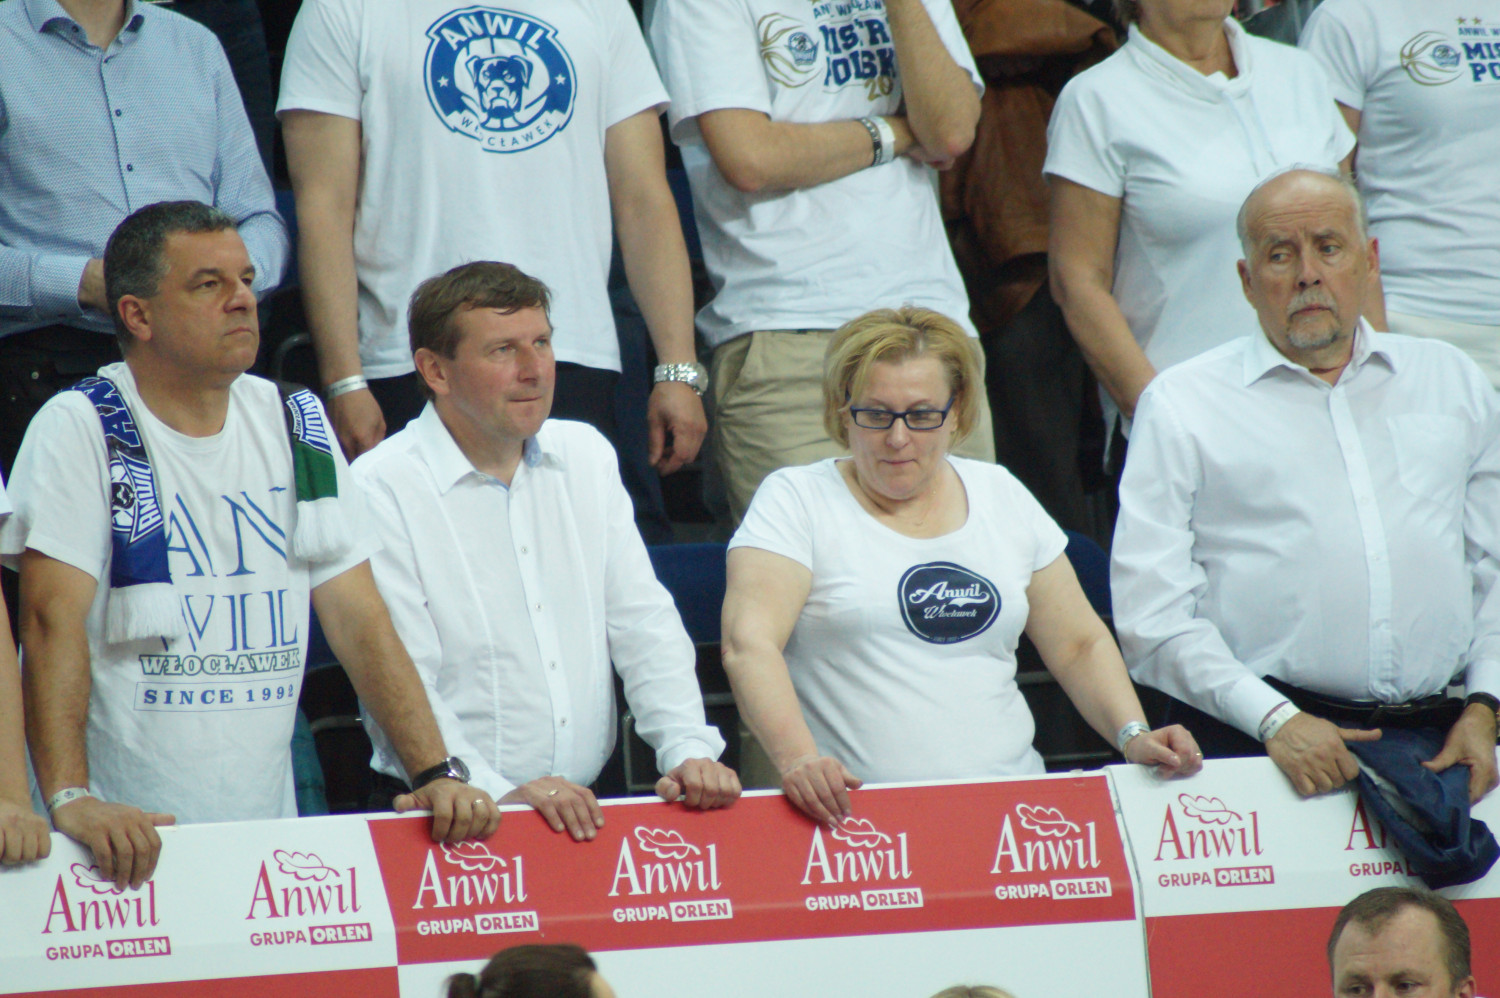 Od lewej: Jacek Jabłoński, prezes spółki Baza, radny Arkadiusz Piasecki, wizeprezydent Barbara Moraczewska, Andrzej Person, członek włocławskiej Rady Sportu.